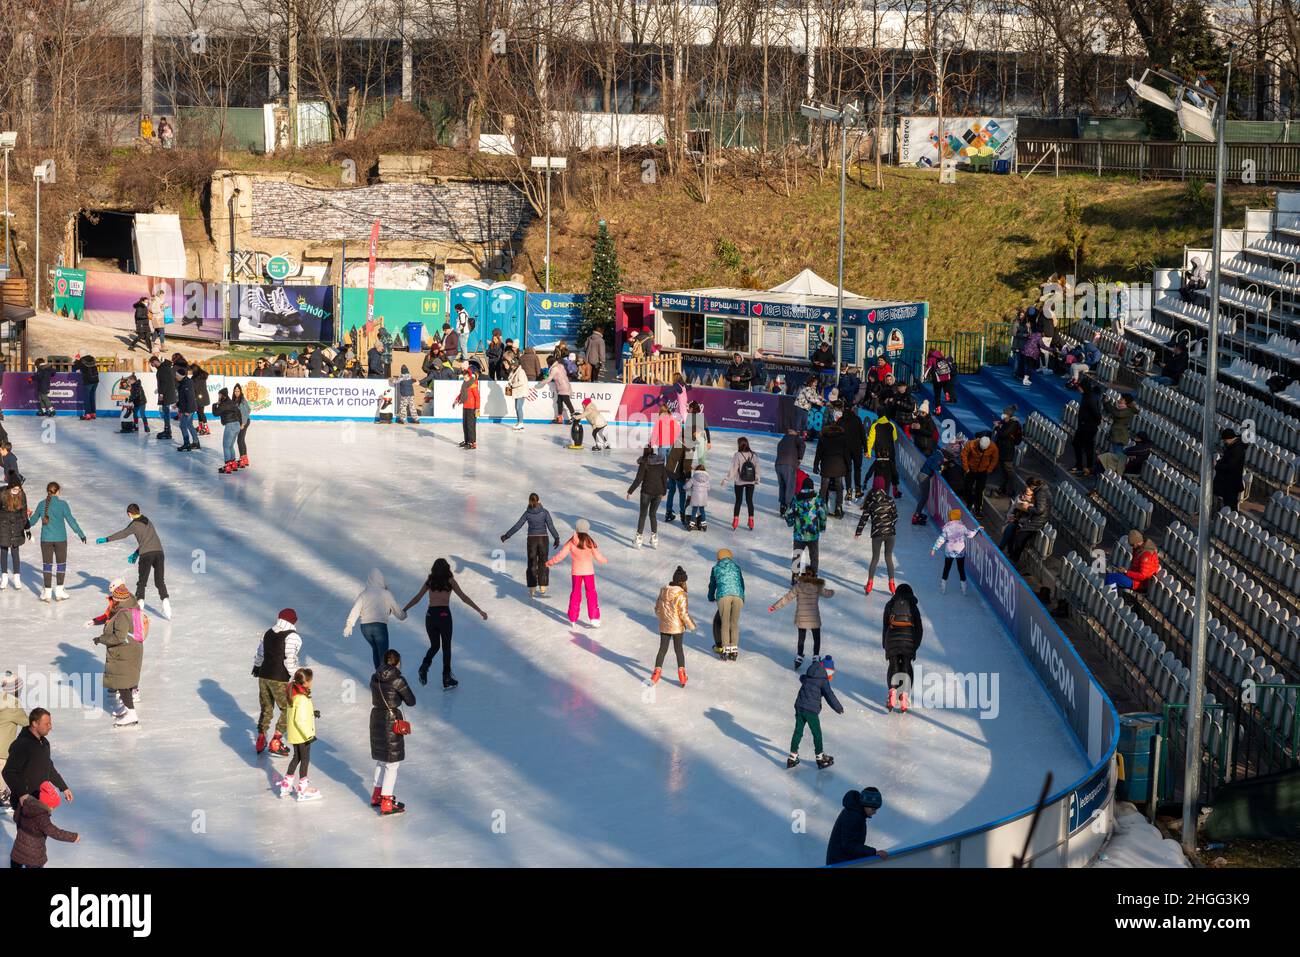 Les gens s'amusent à la patinoire extérieure du stade Yunak, le jour d'hiver ensoleillé à Sofia, en Bulgarie Banque D'Images